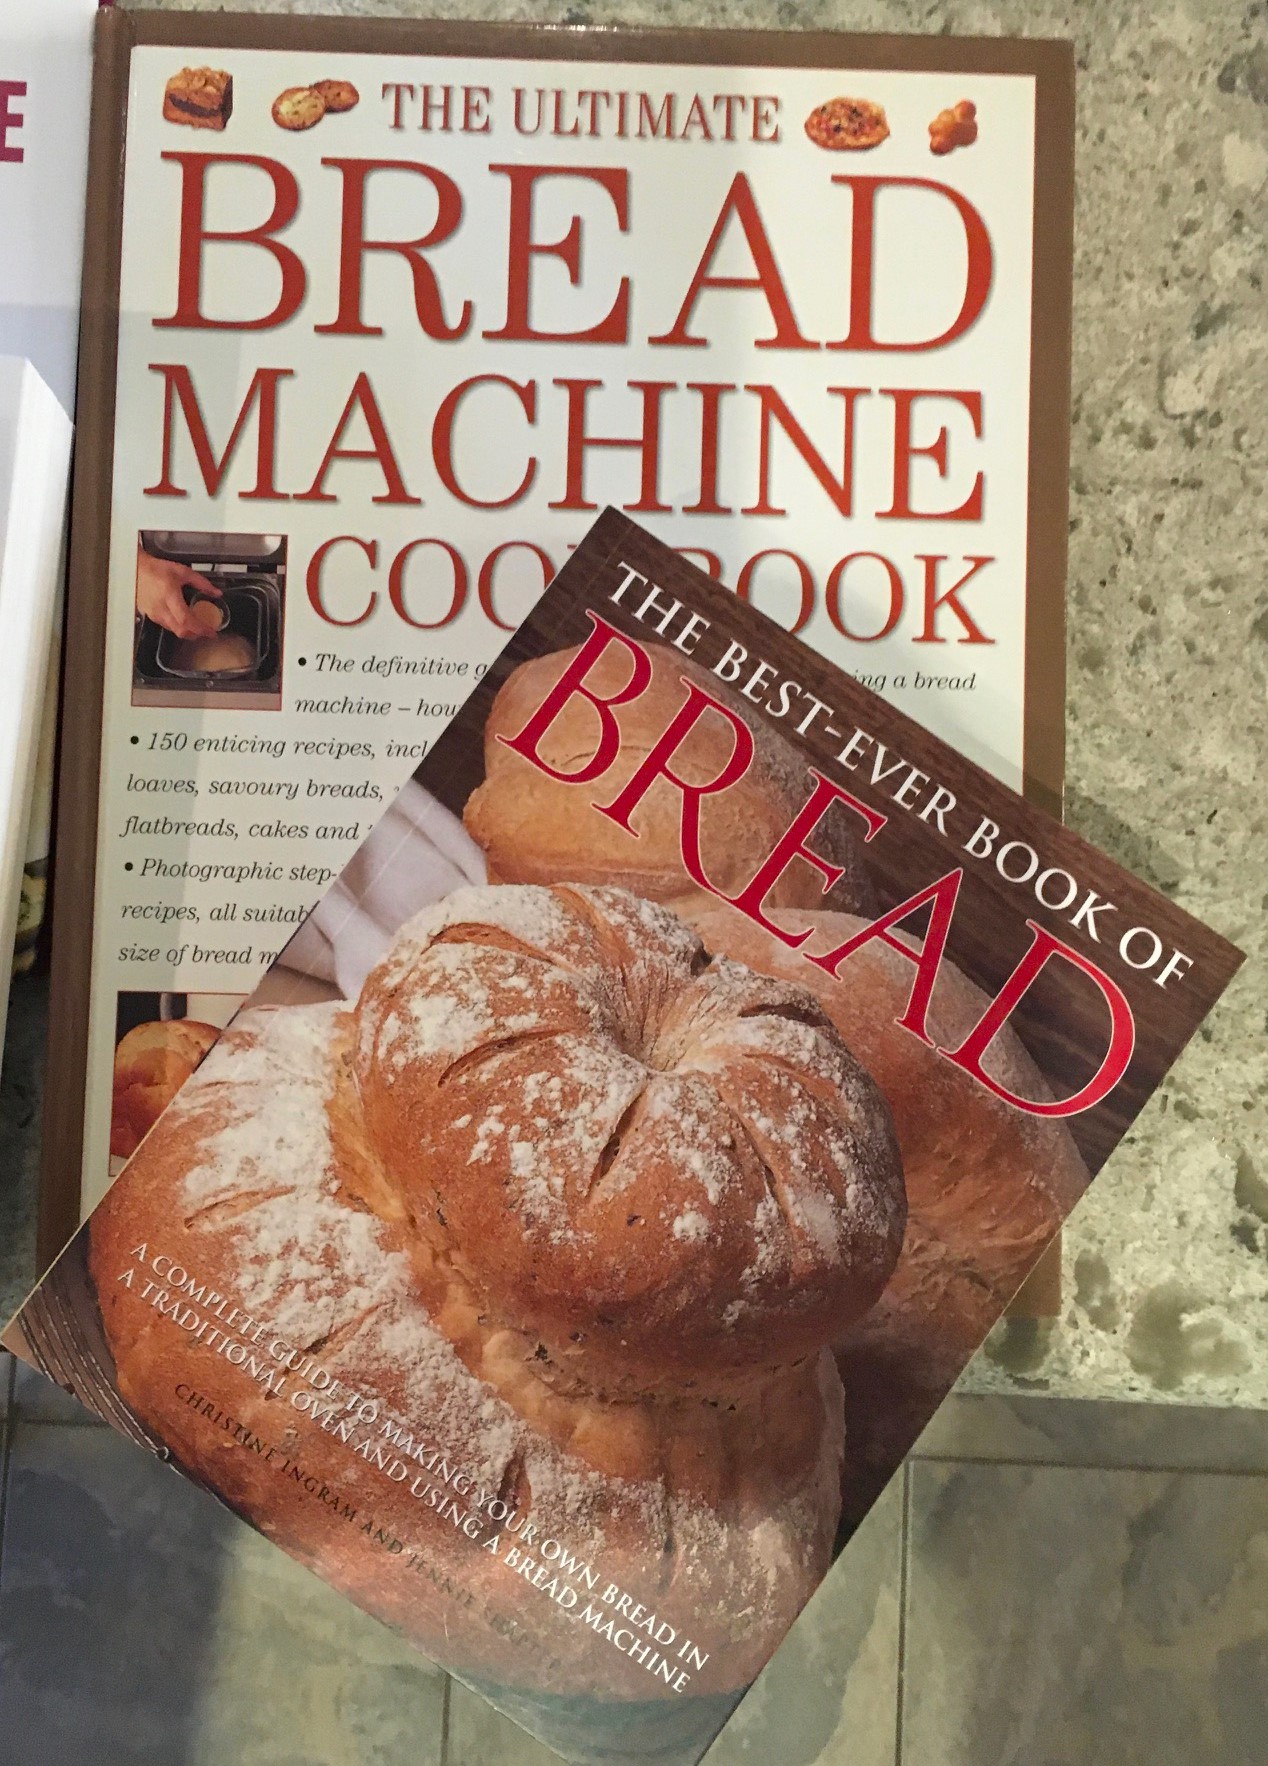 Bread machine books 01